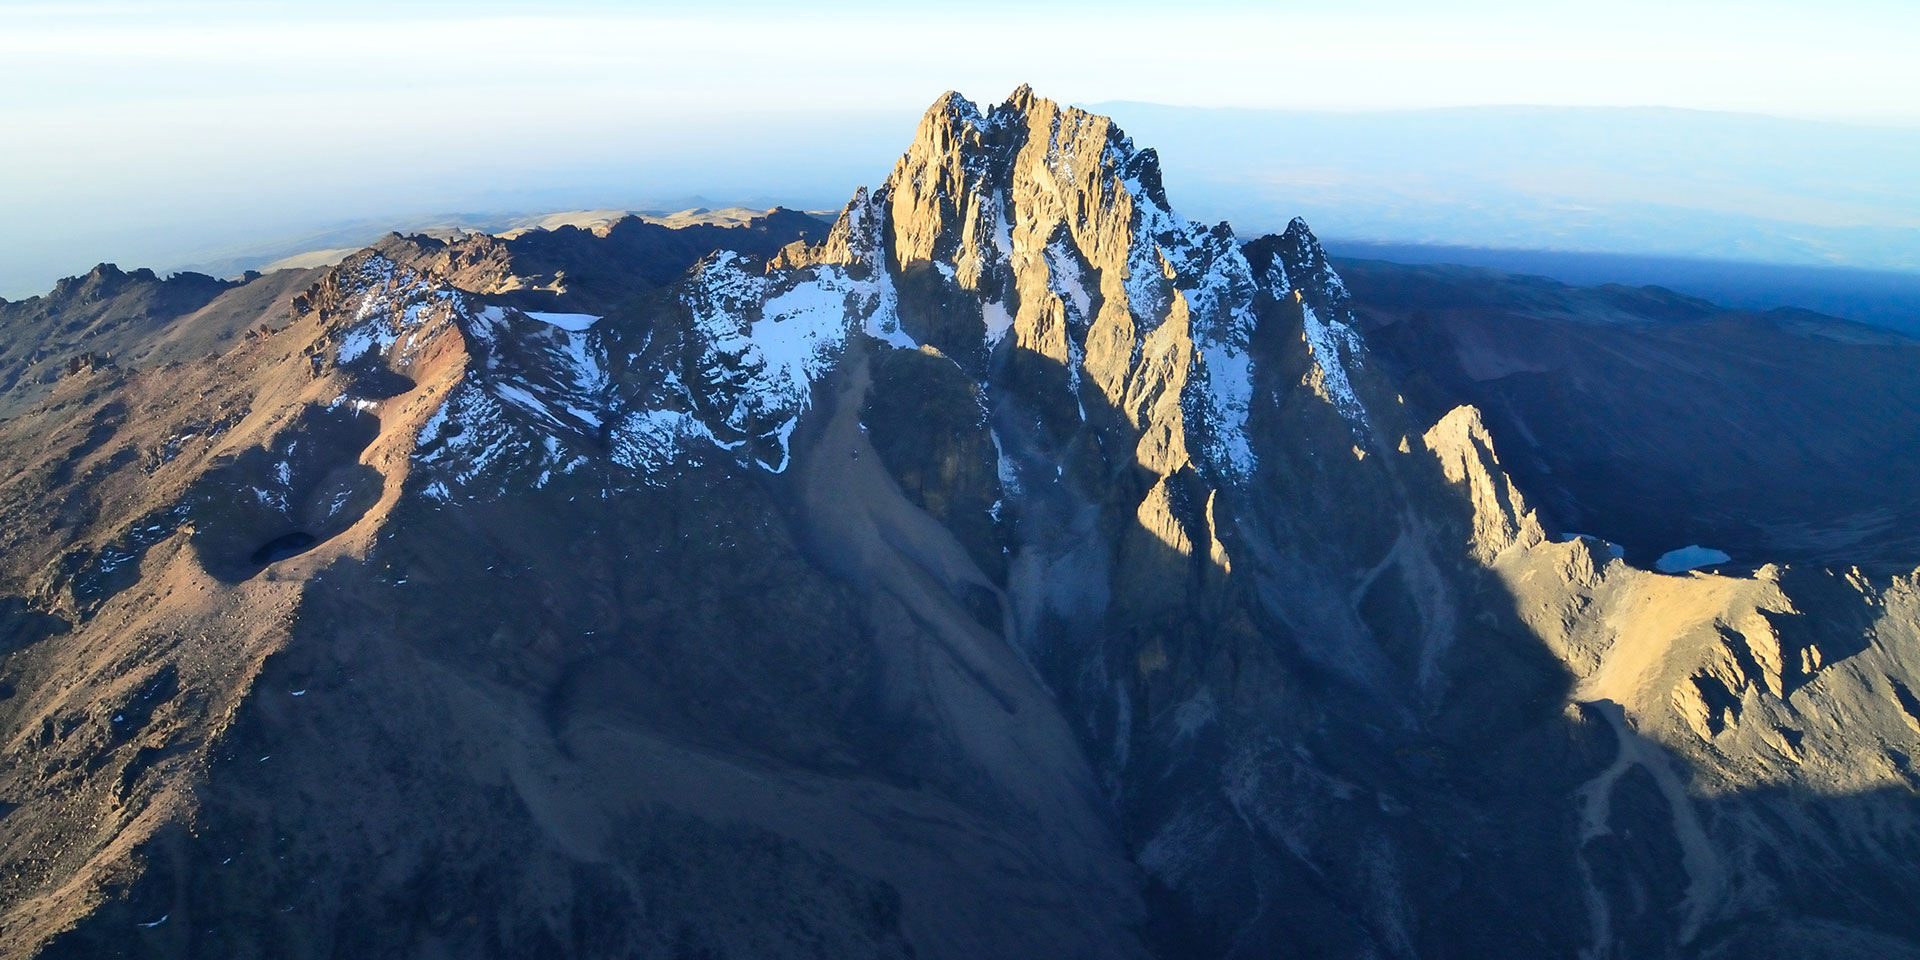 Mount Kenya Peaks